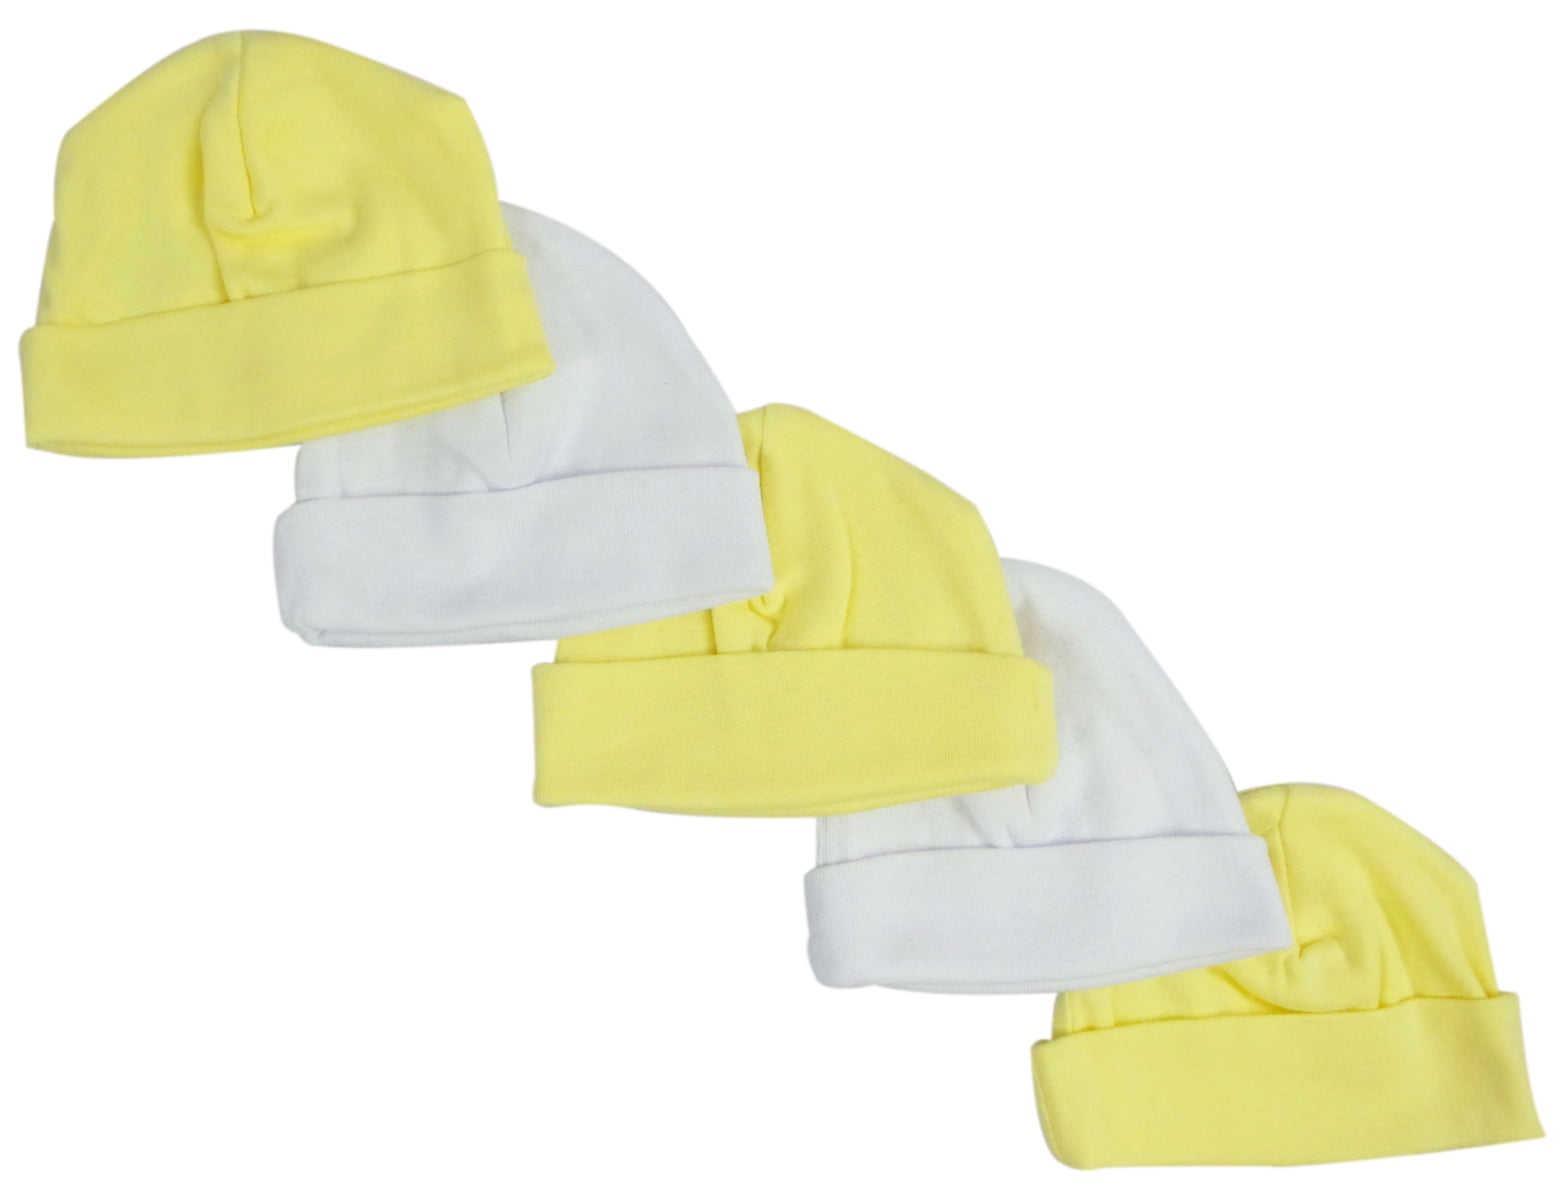 Baby Caps, Yellow & White - Pack Of 5